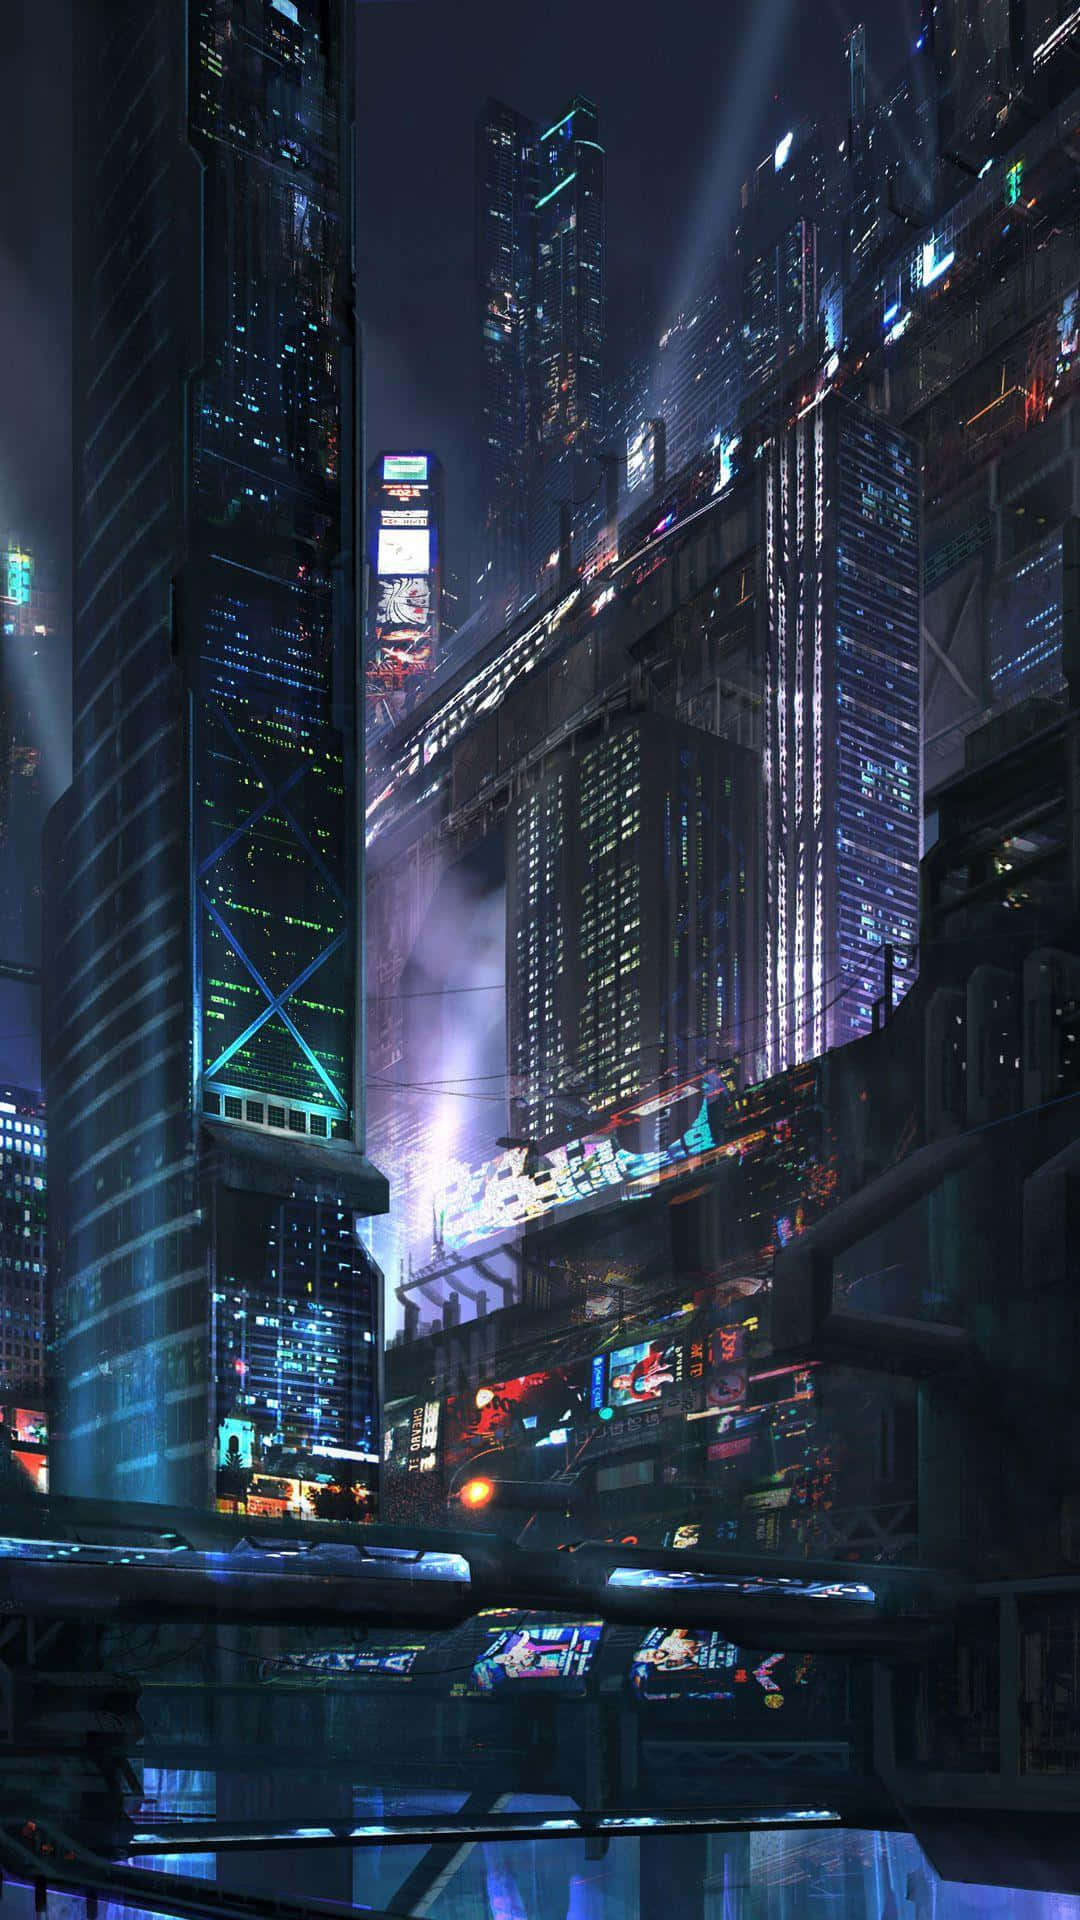 Cyberpunk Scifi night city 4K wallpaper download